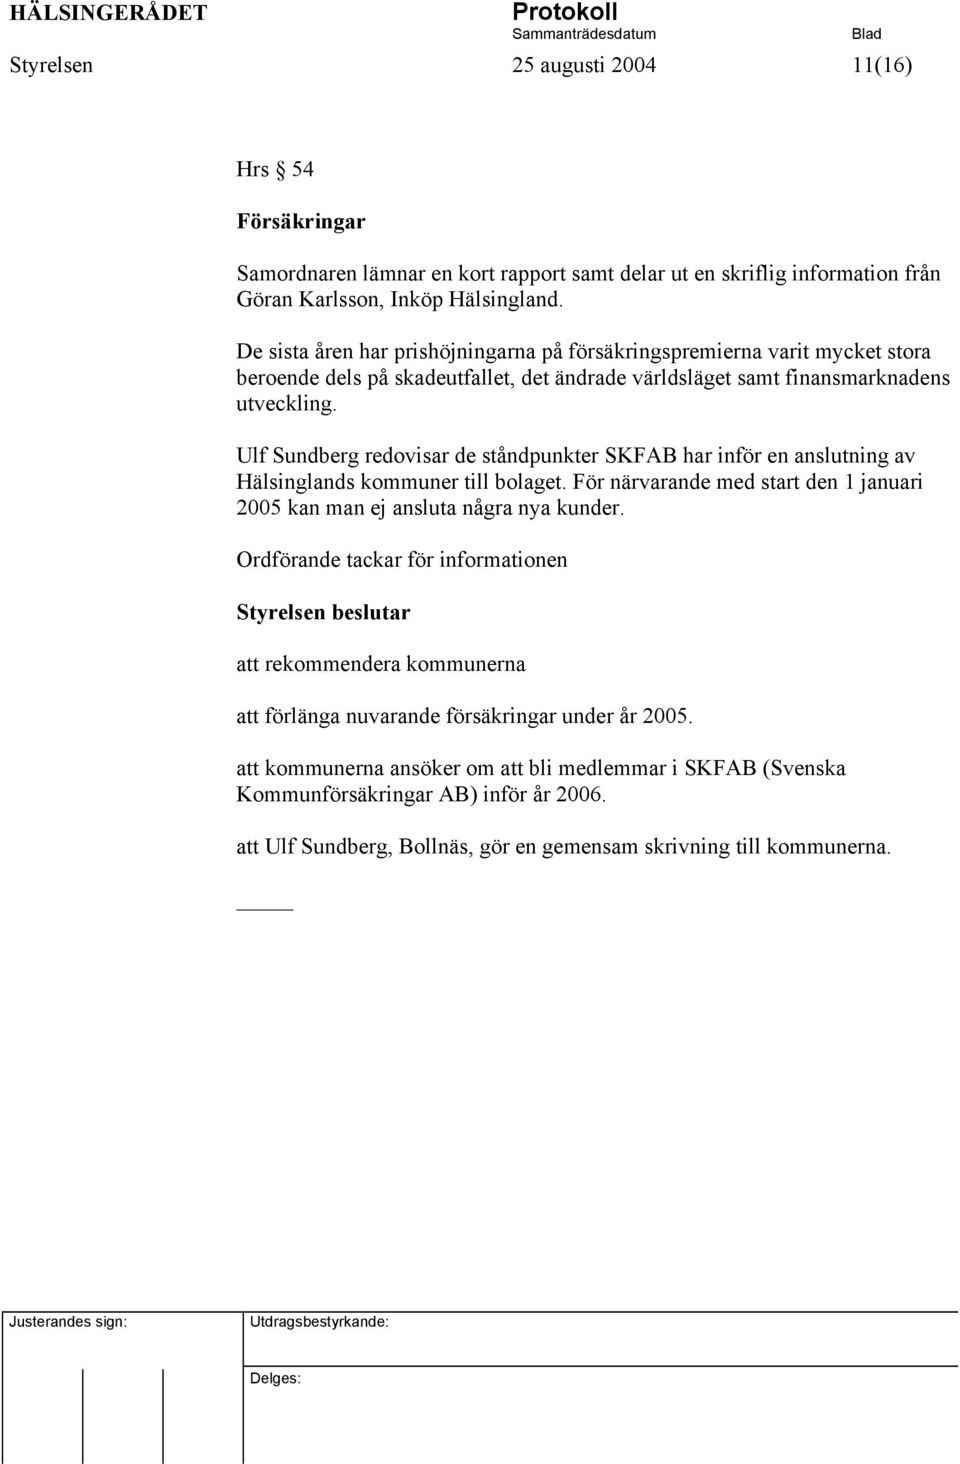 Ulf Sundberg redovisar de ståndpunkter SKFAB har inför en anslutning av Hälsinglands kommuner till bolaget. För närvarande med start den 1 januari 2005 kan man ej ansluta några nya kunder.